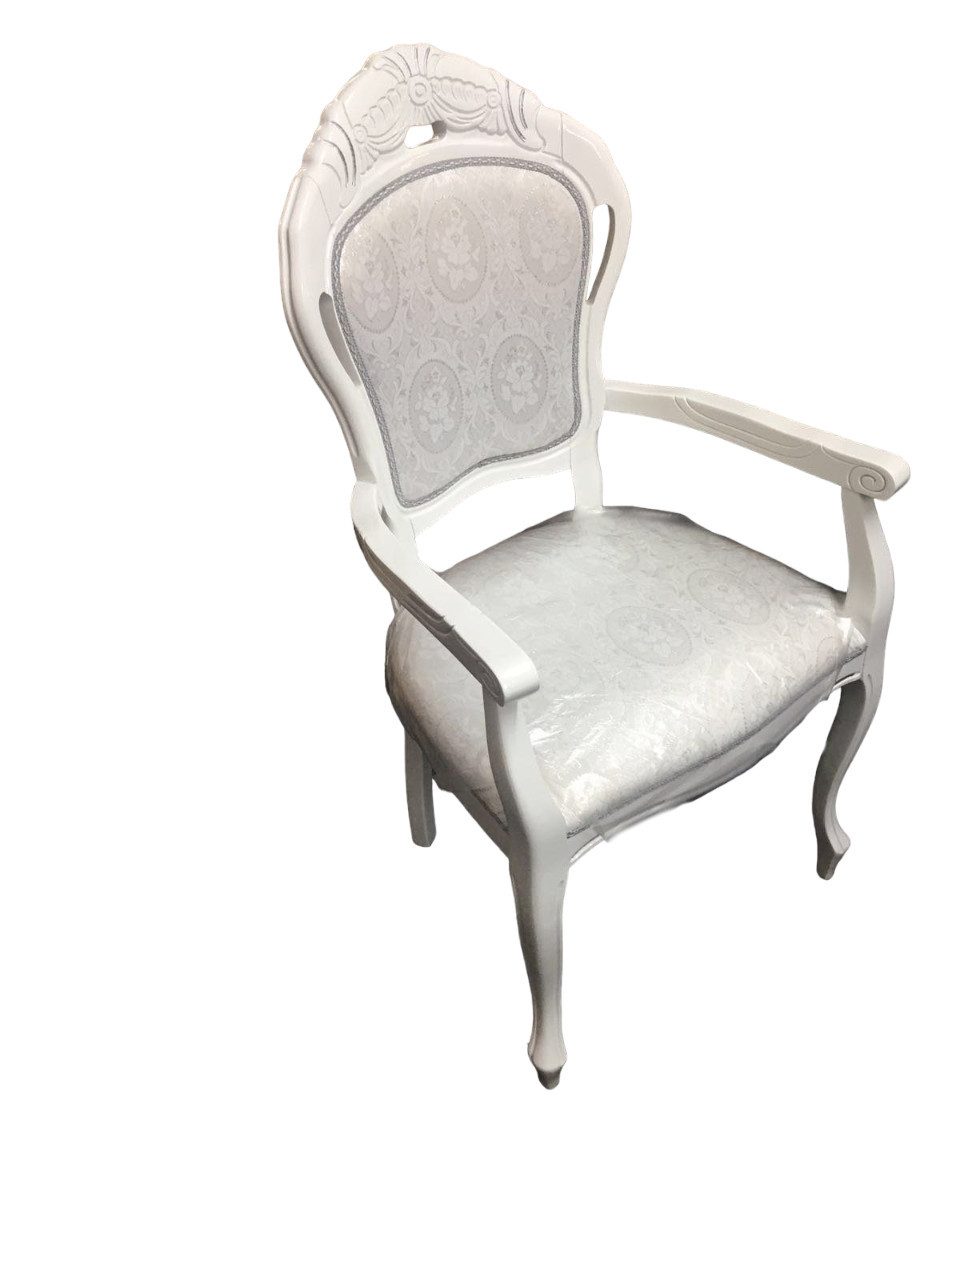 JVmoebel Stuhl Stuhl Weiß Silber Design Wohnzimmer Esszimmer Holz Stühle Polster